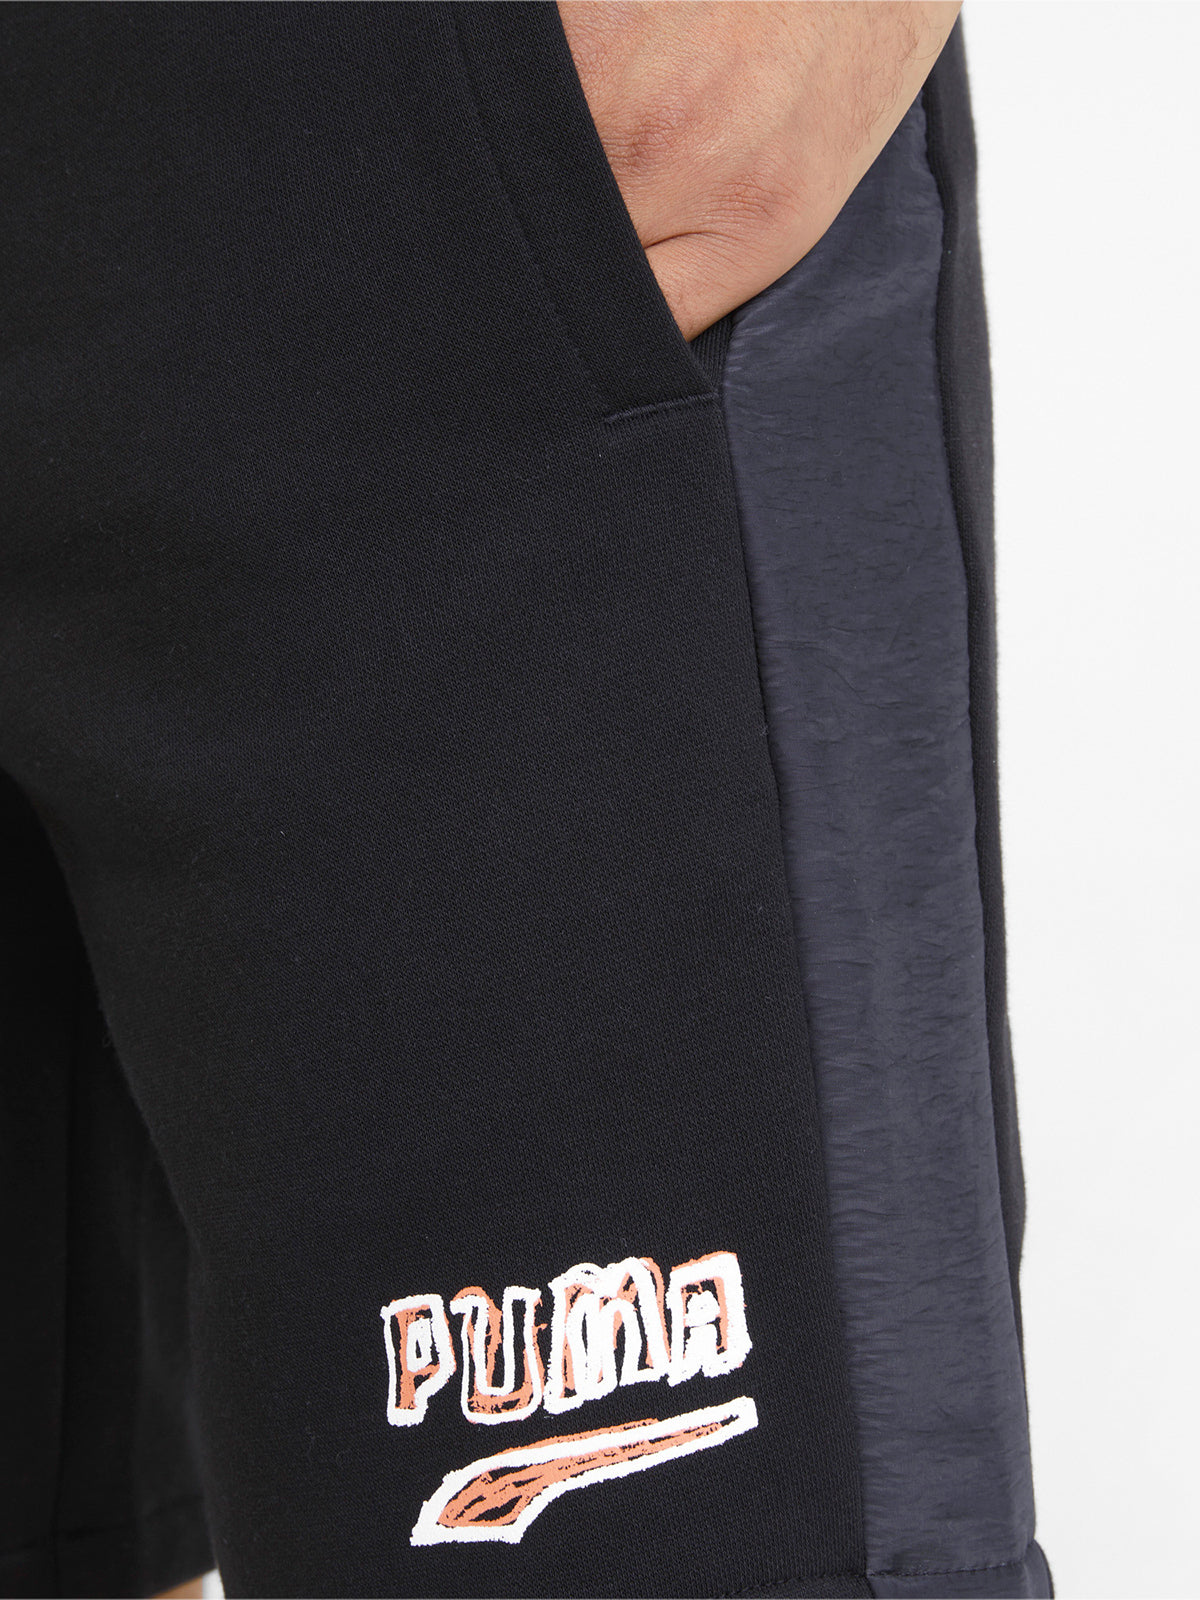 מכנסיים קצרים עם הדפס לוגו גרפי- Puma|פומה